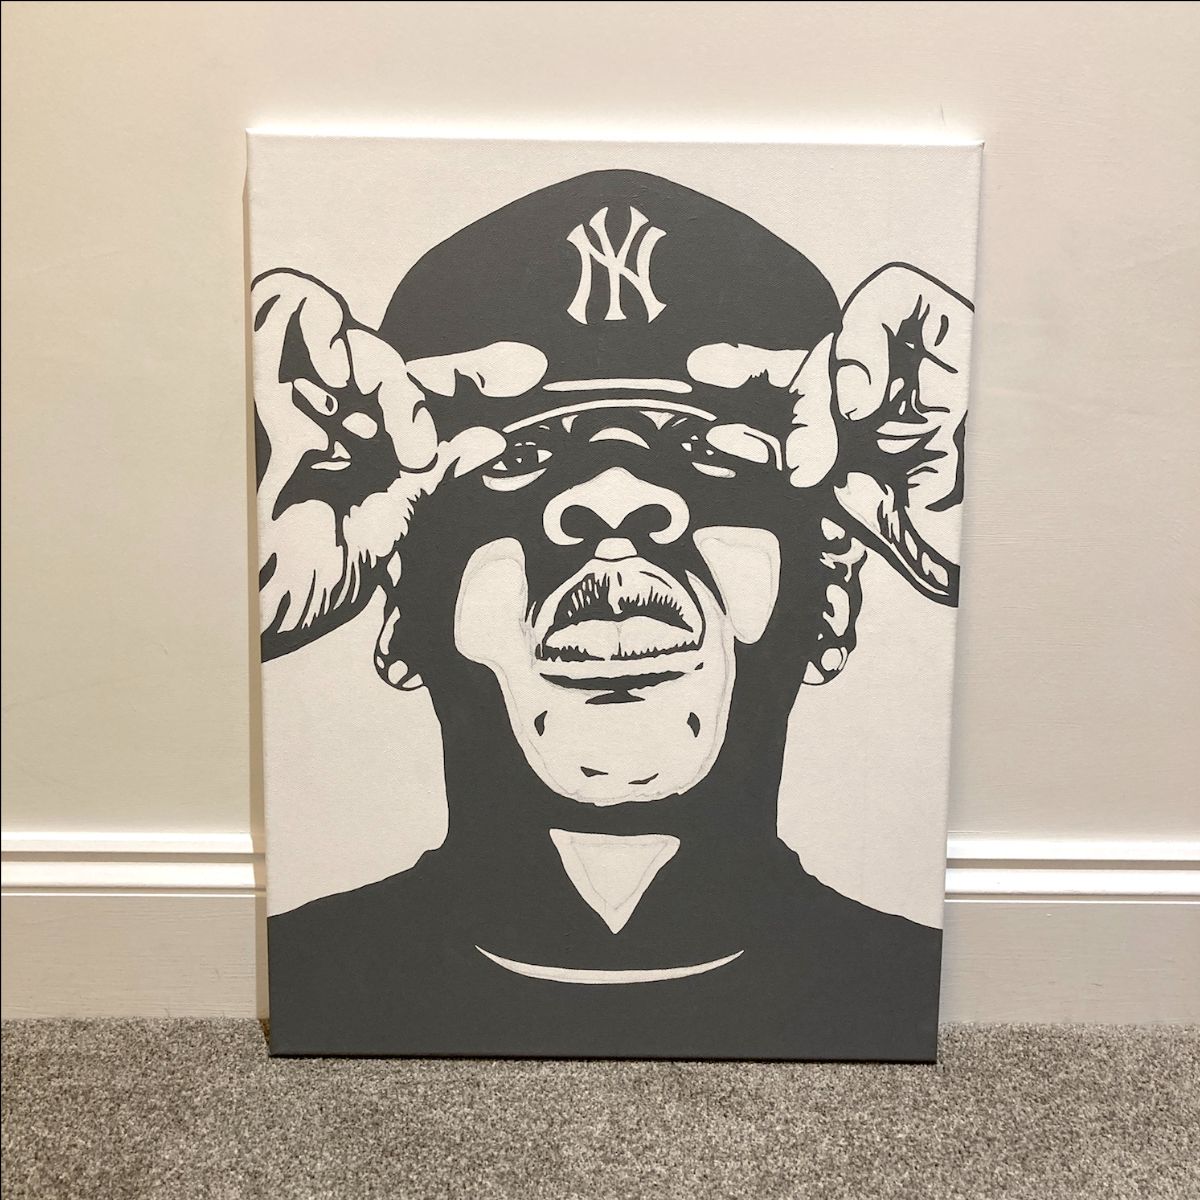 Jay-Z pop art painting - work in progress | By Kerwin